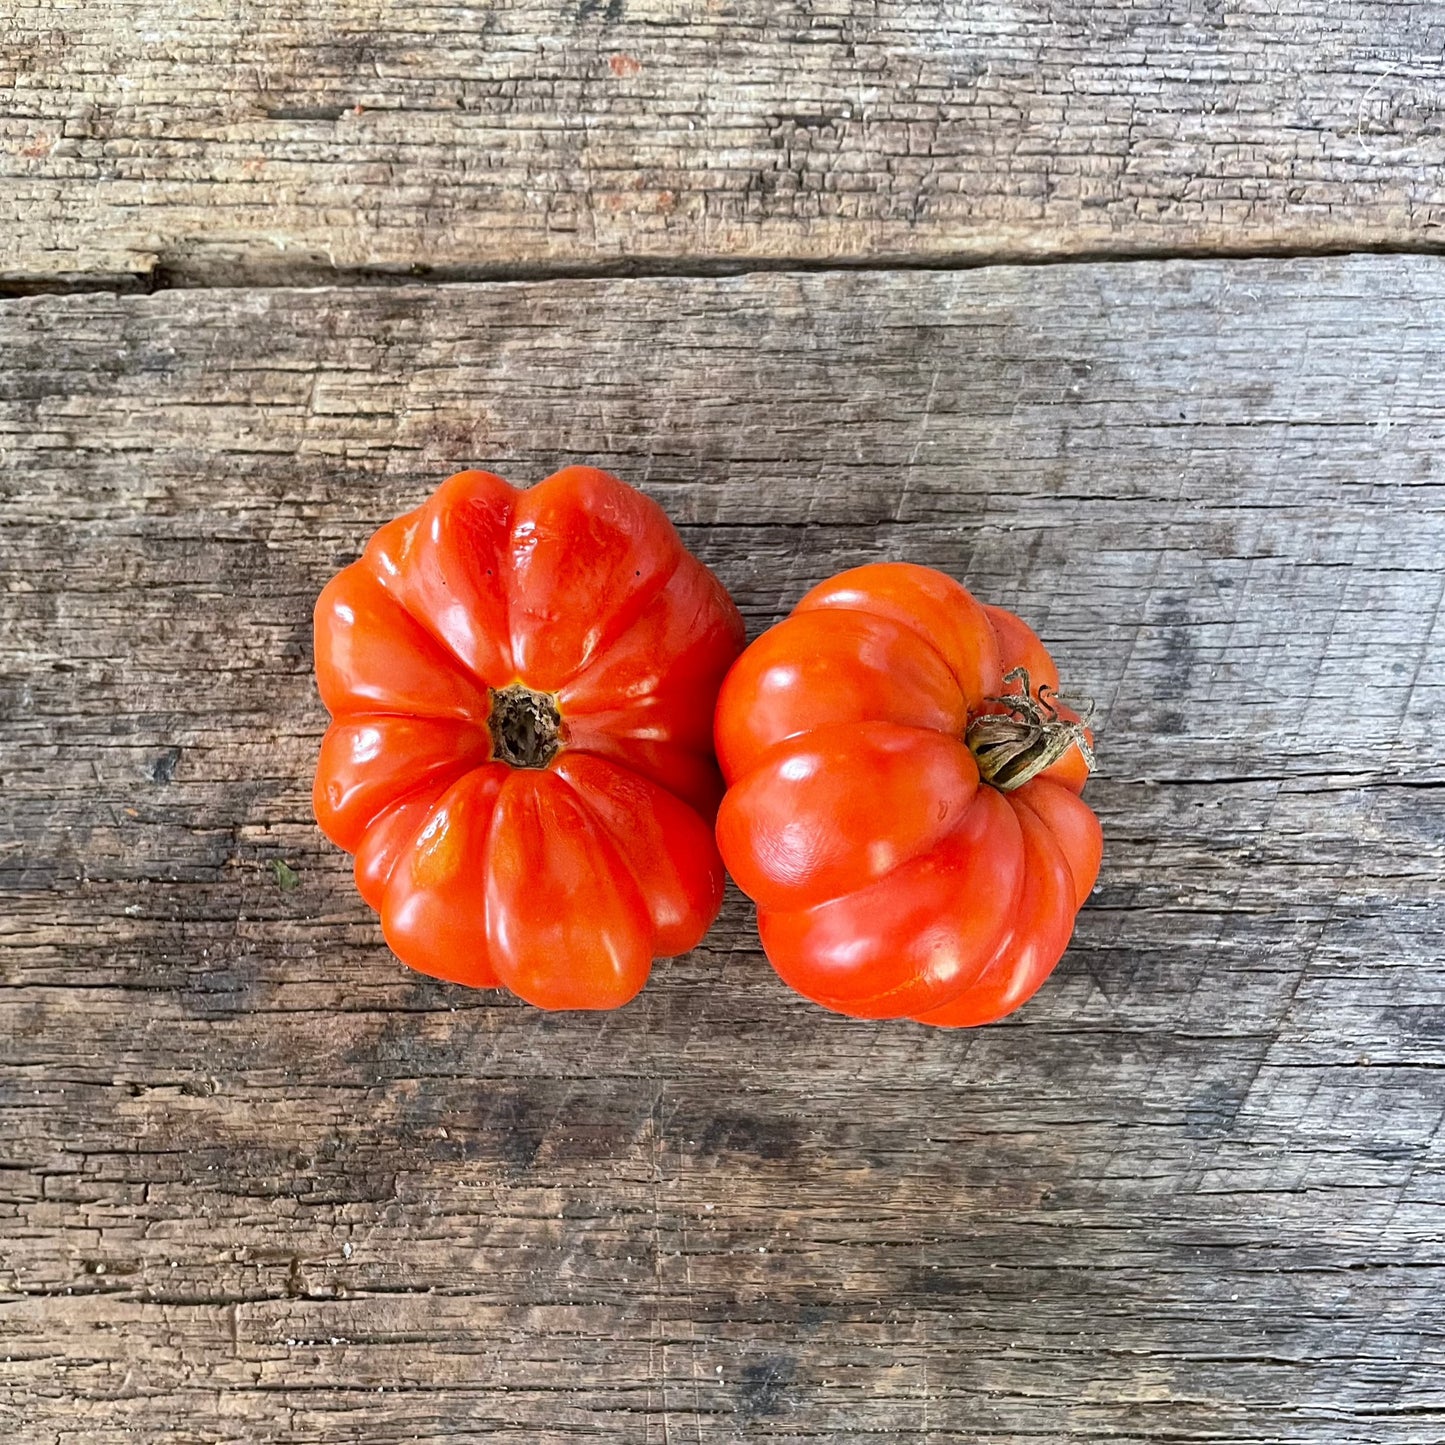 Marmande Heirloom Tomato Seeds